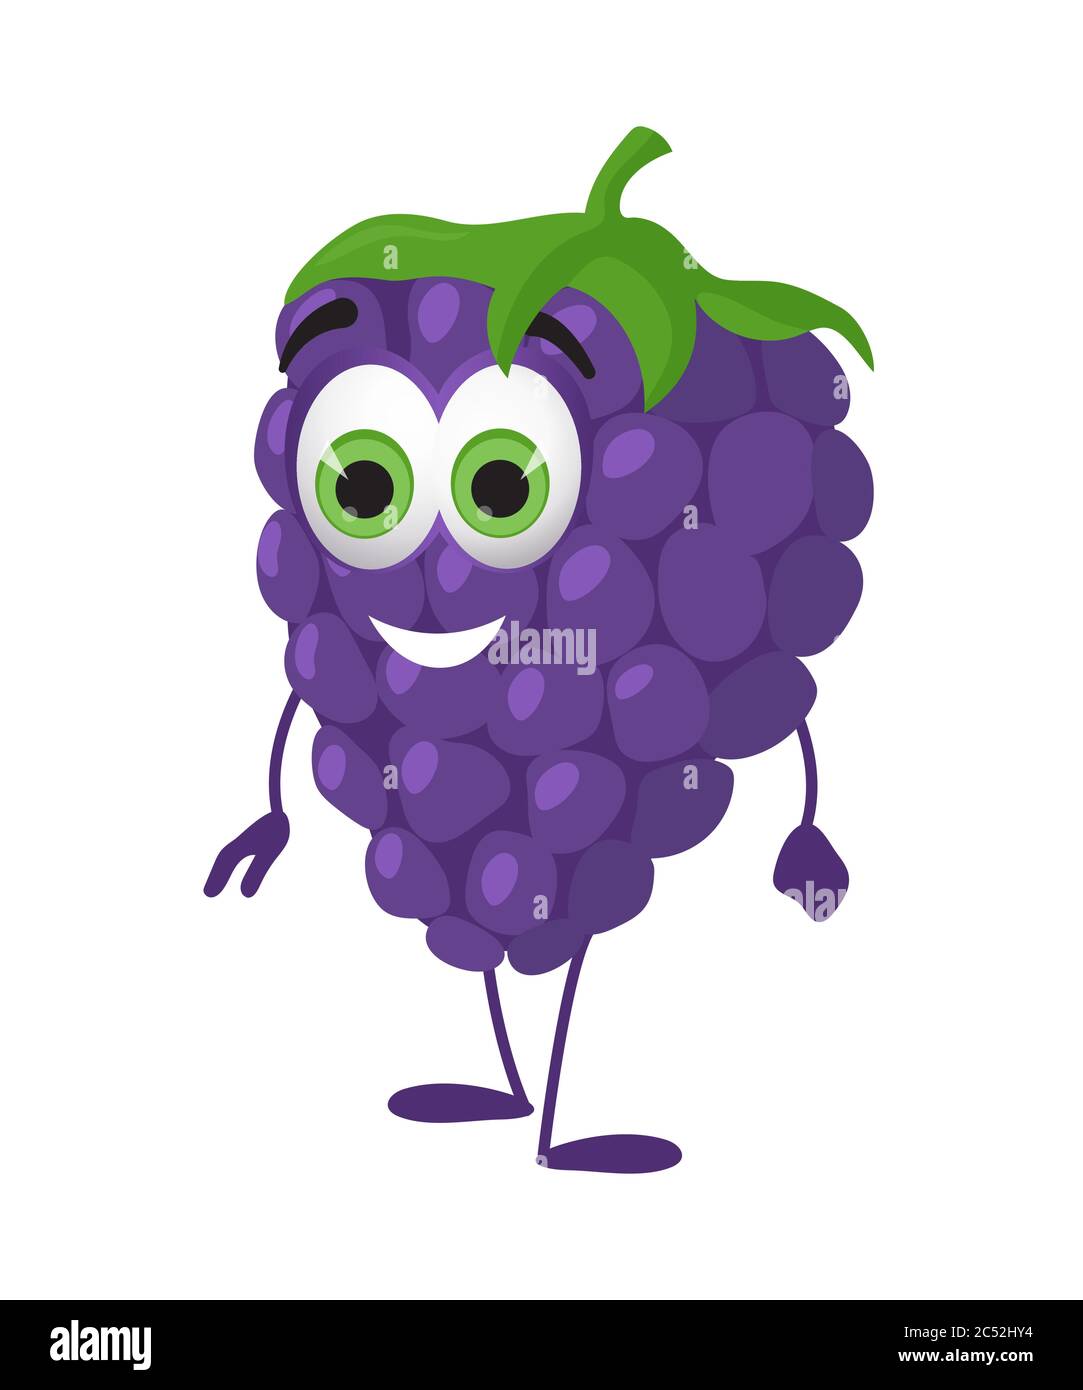 Drôle de raisin avec les yeux. Dessin animé drôle de fruits personnages illustration vectorielle plate Illustration de Vecteur